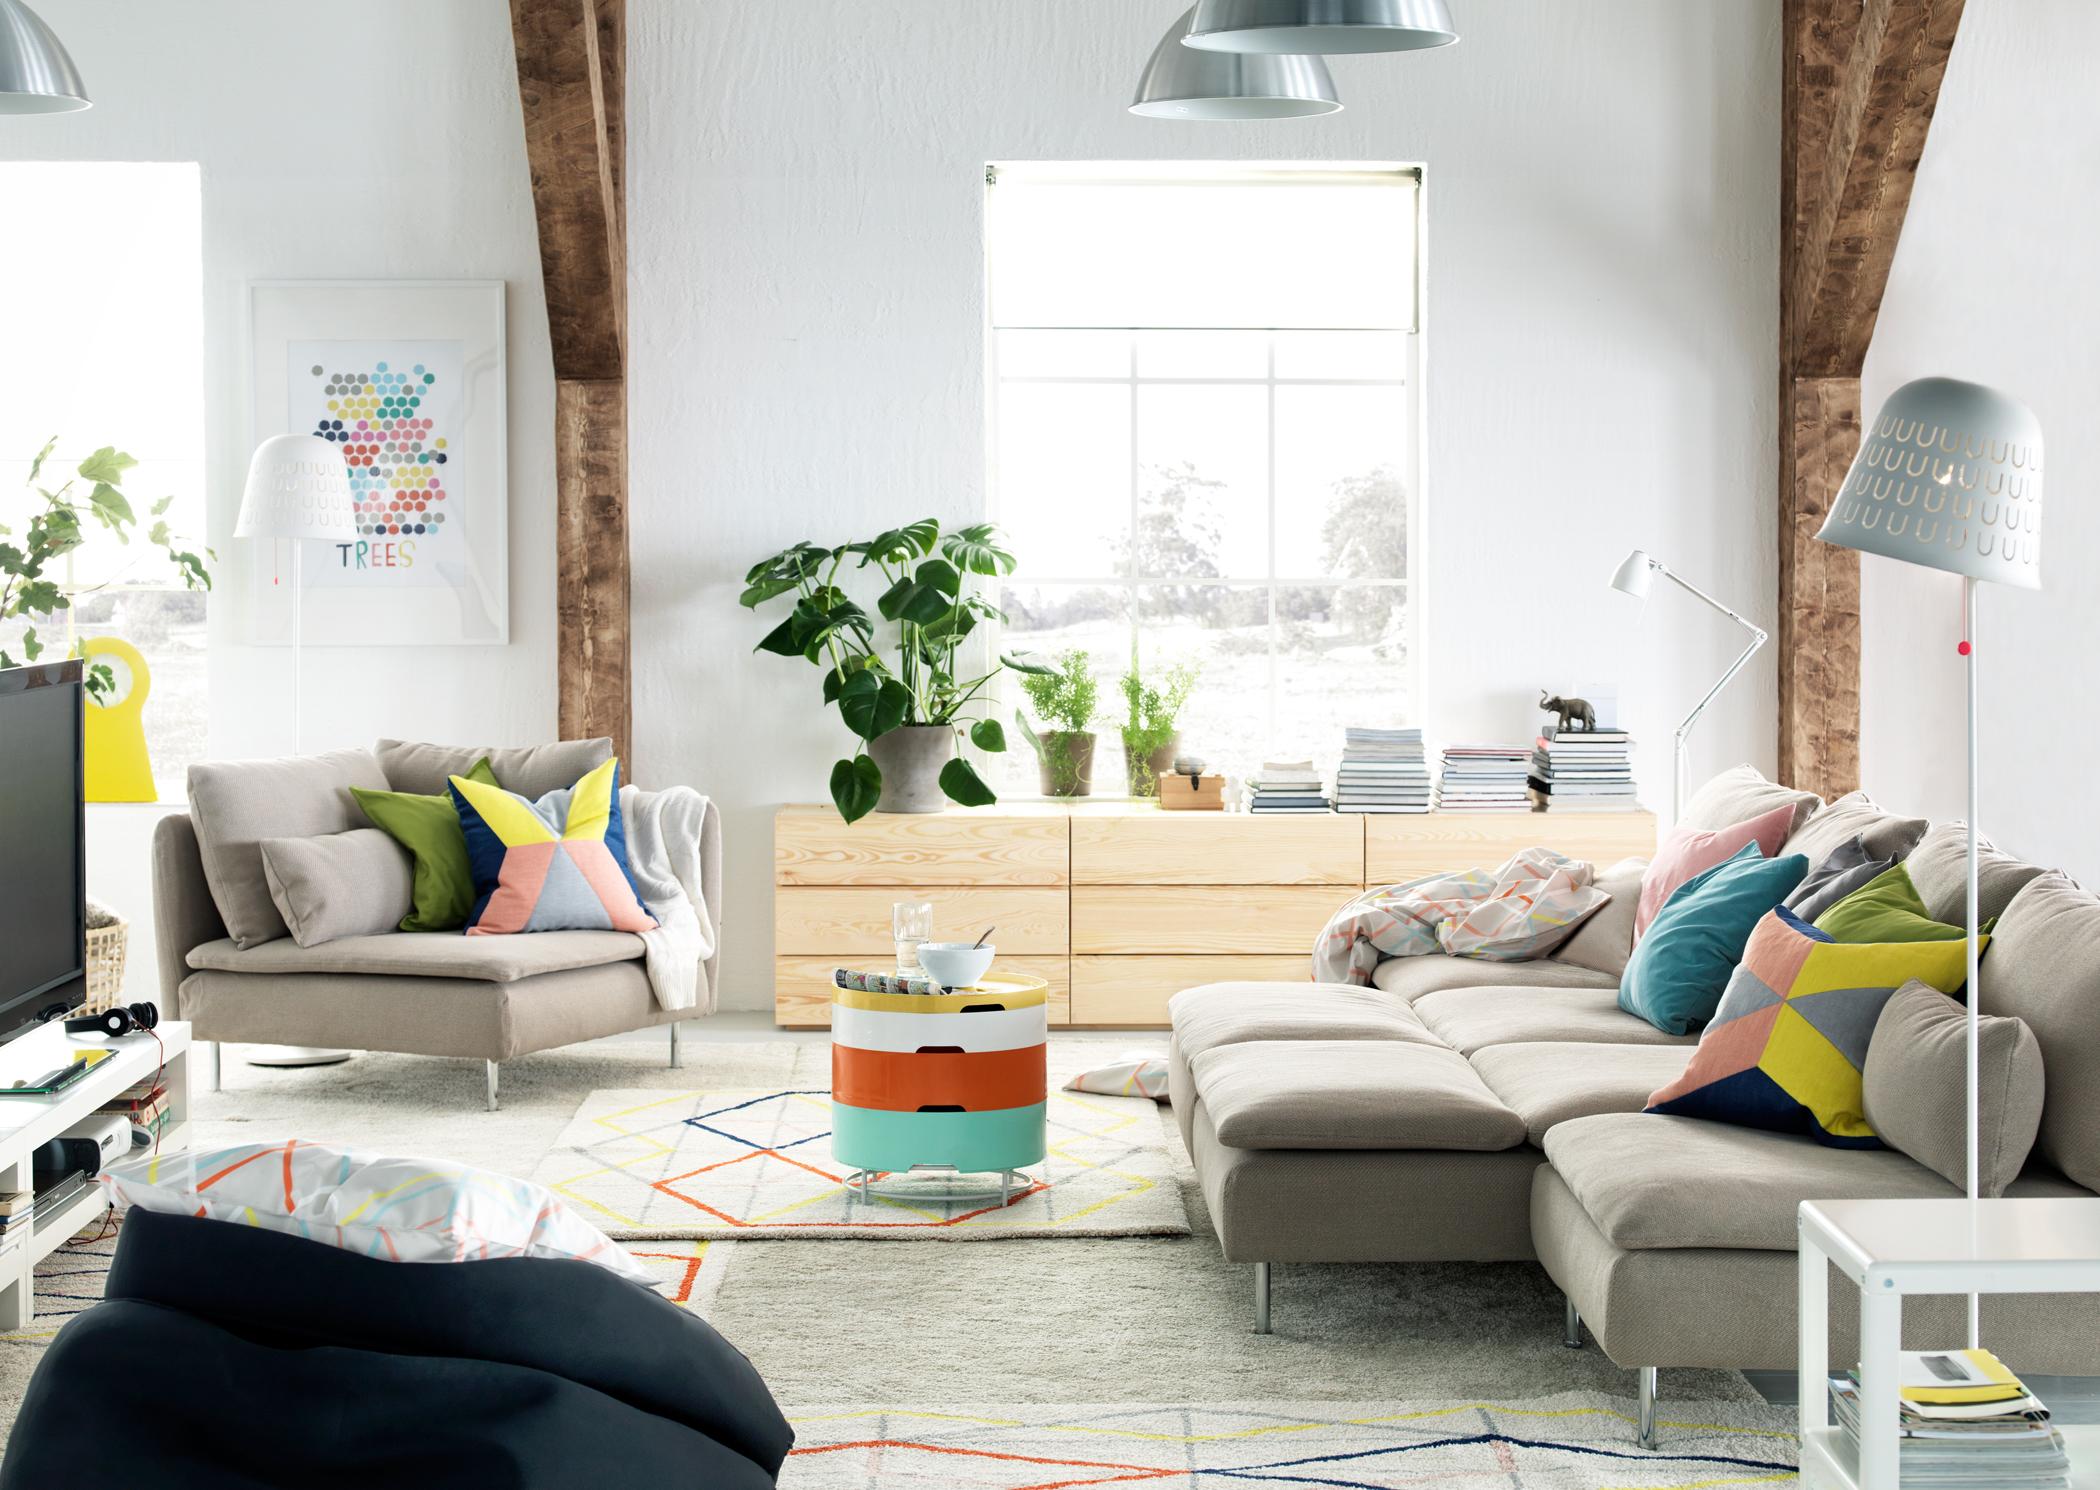 Frischer Look fürs Wohnzimmer #teppich #stehlampe #ikea #bunterteppich #sofa #grauessofa #sitzkissen ©Inter IKEA Systems B.V.